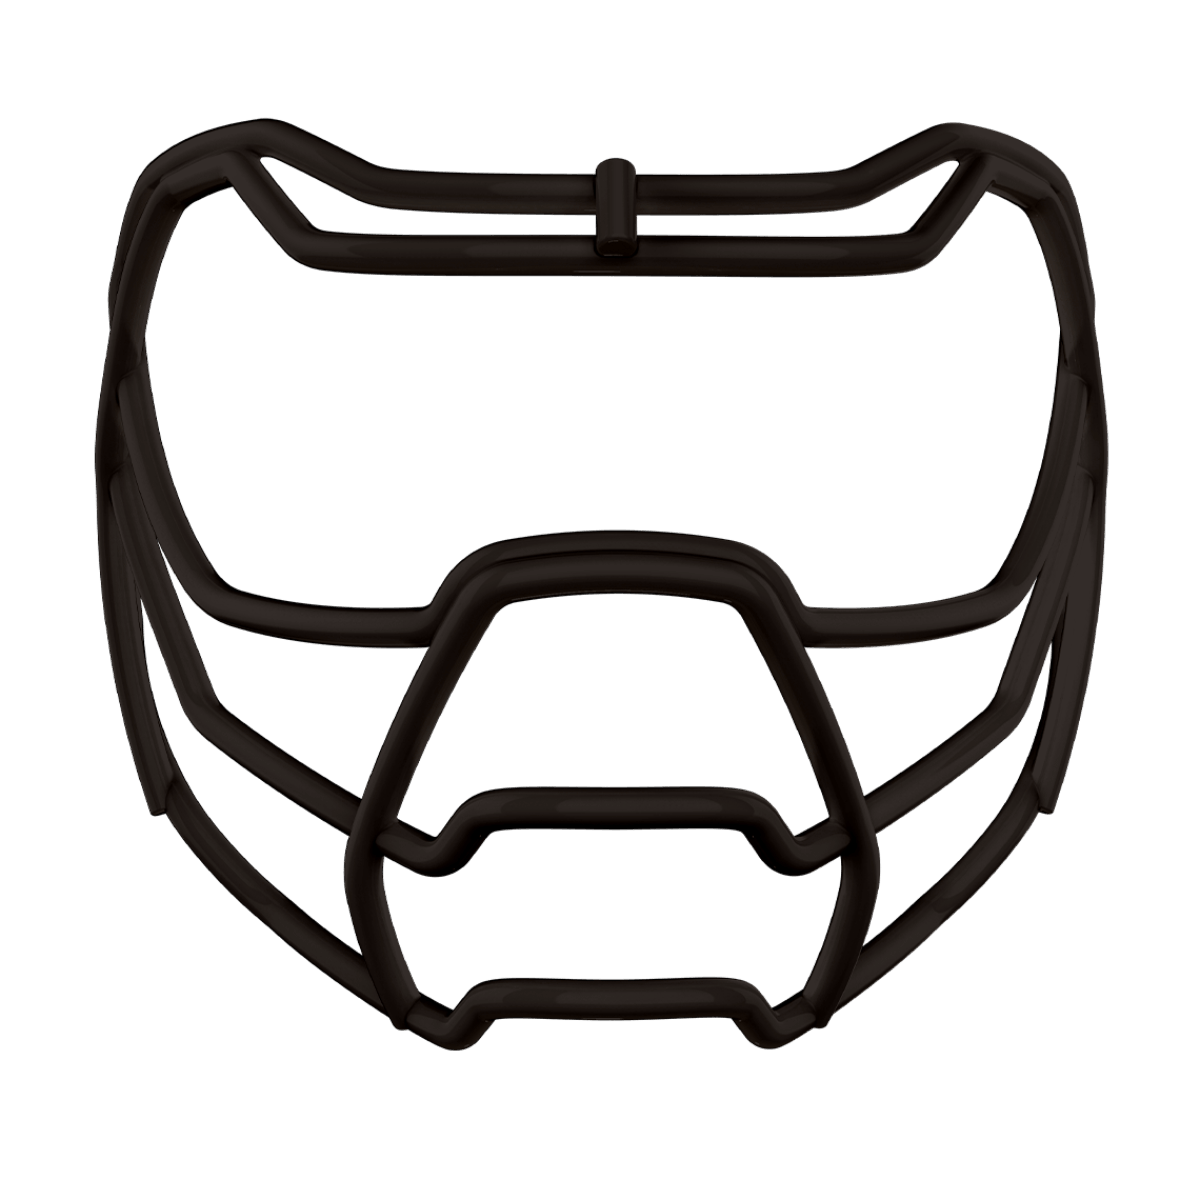 Black Prowl face mask for football helmet.